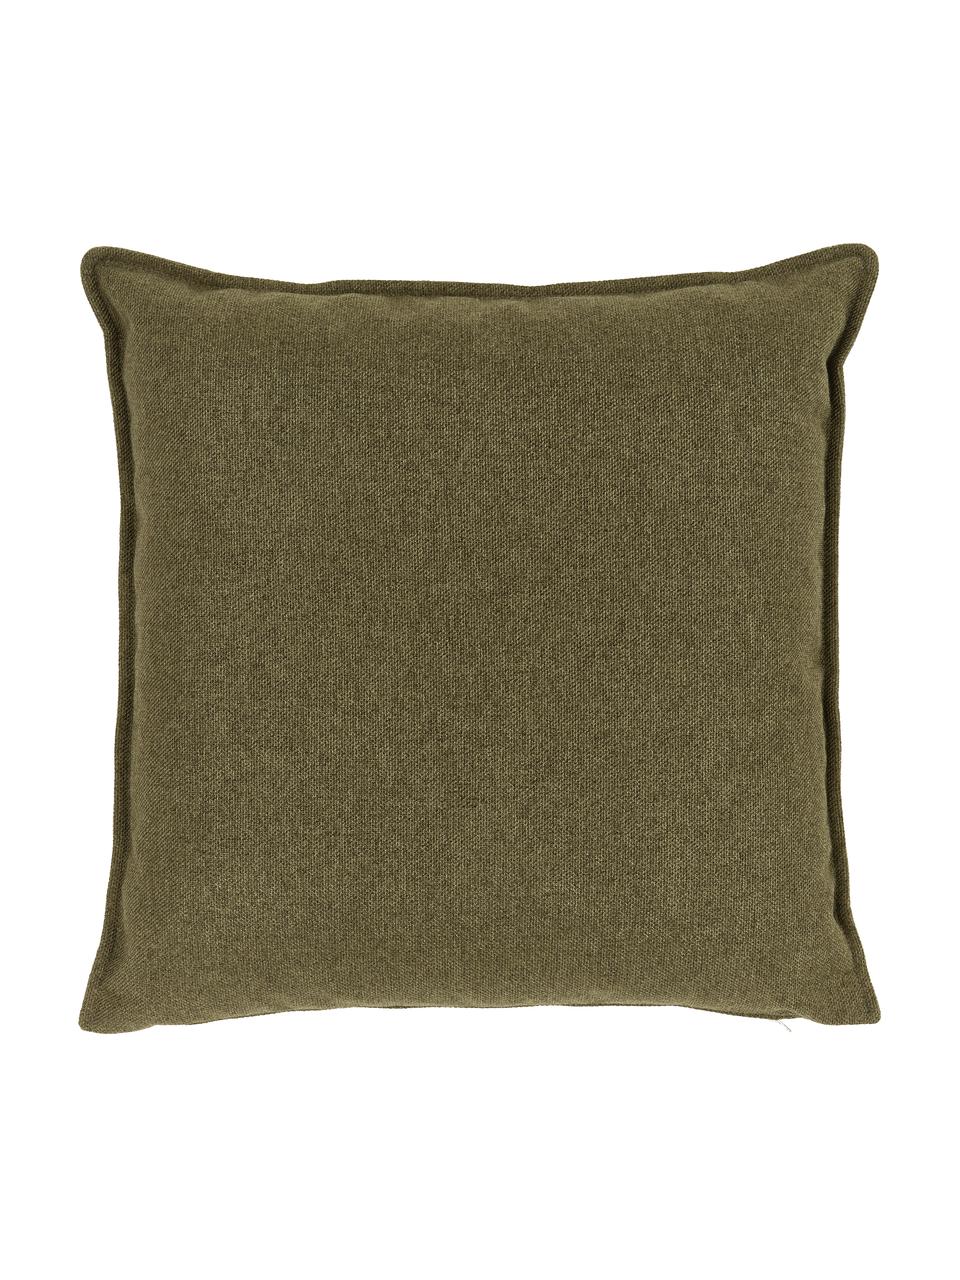 Cuscino arredo verde Lennon, Rivestimento: 100% poliestere, Tessuto verde, Larg. 60 x Lung. 60 cm